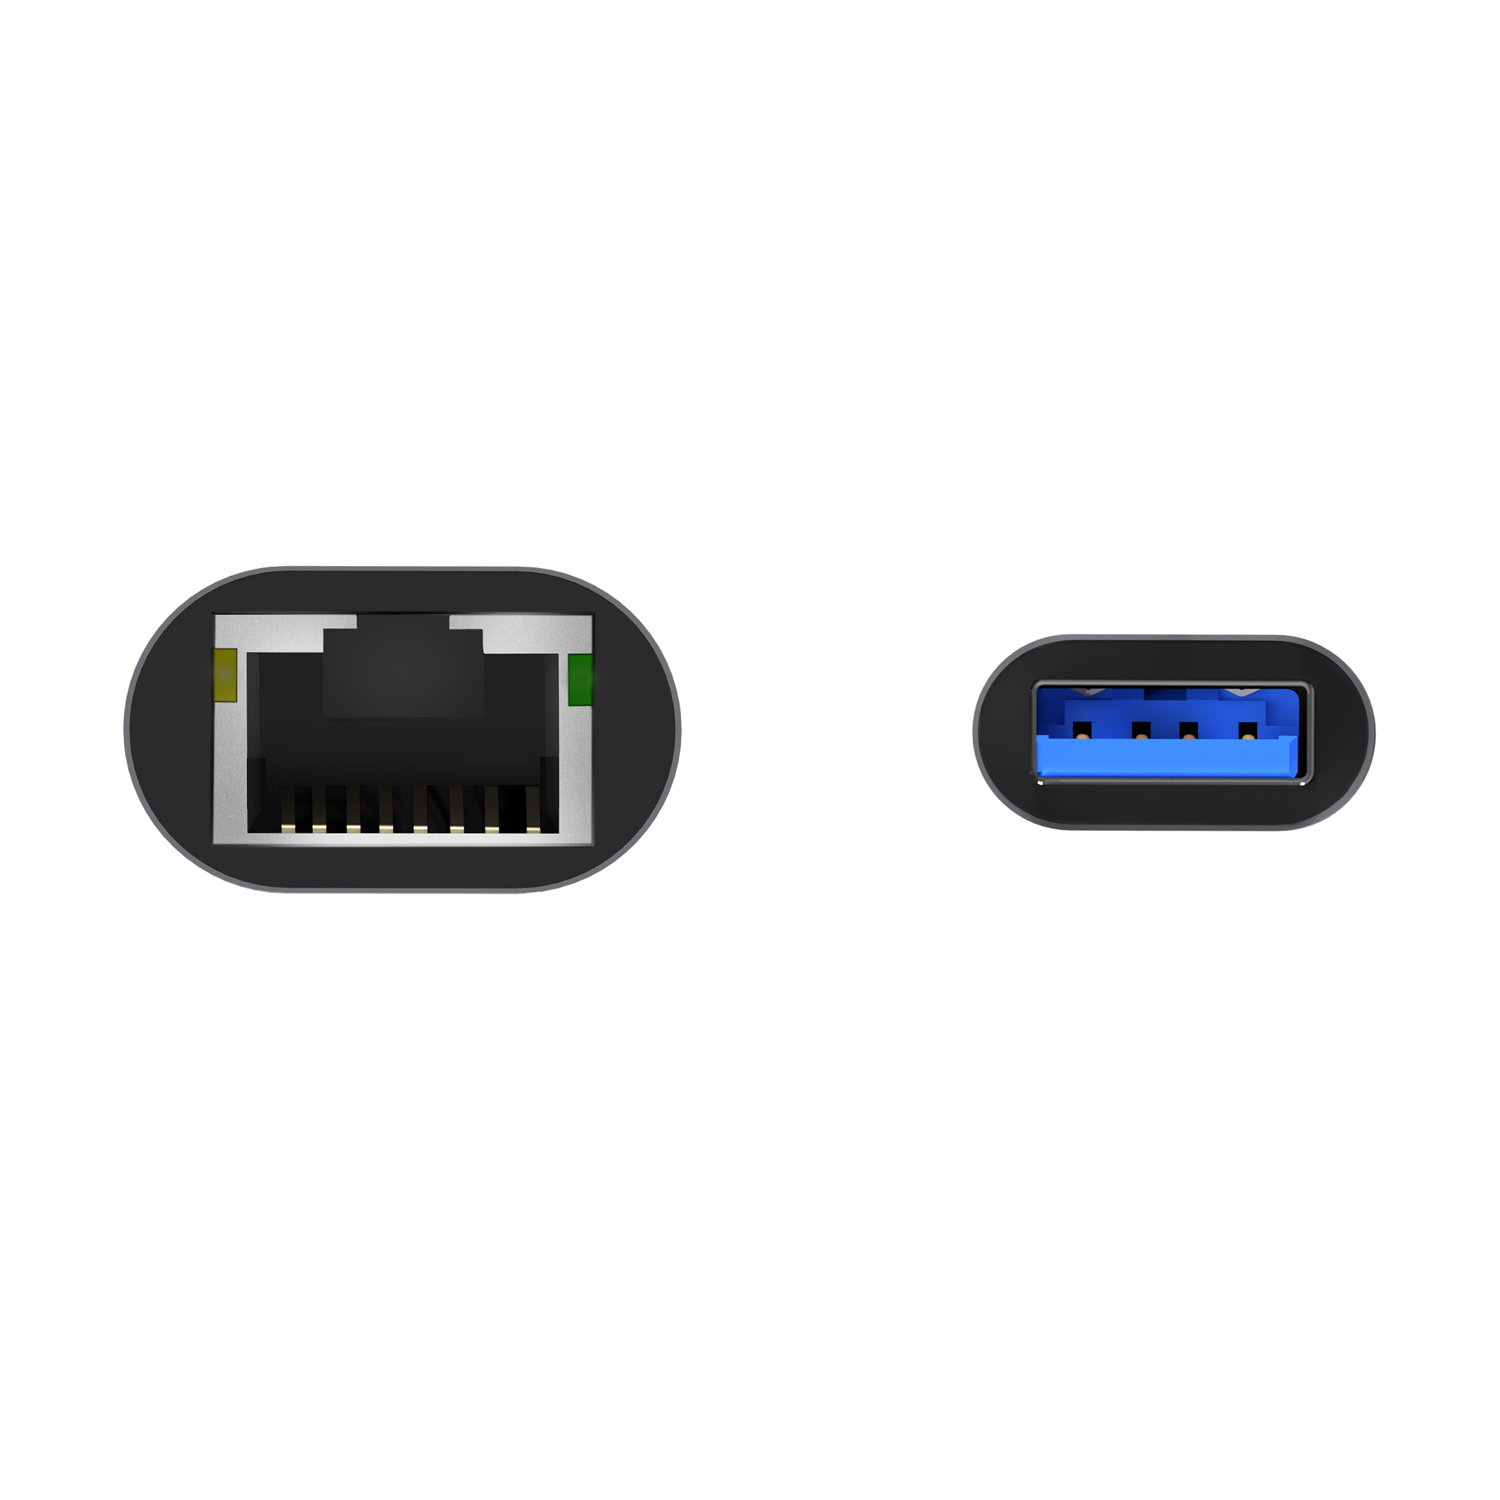 Aisens Convertisseur Ethernet Gigabit USB 3.0 vers 10/100/1000 Mbps - 15cm - Couleur Gris